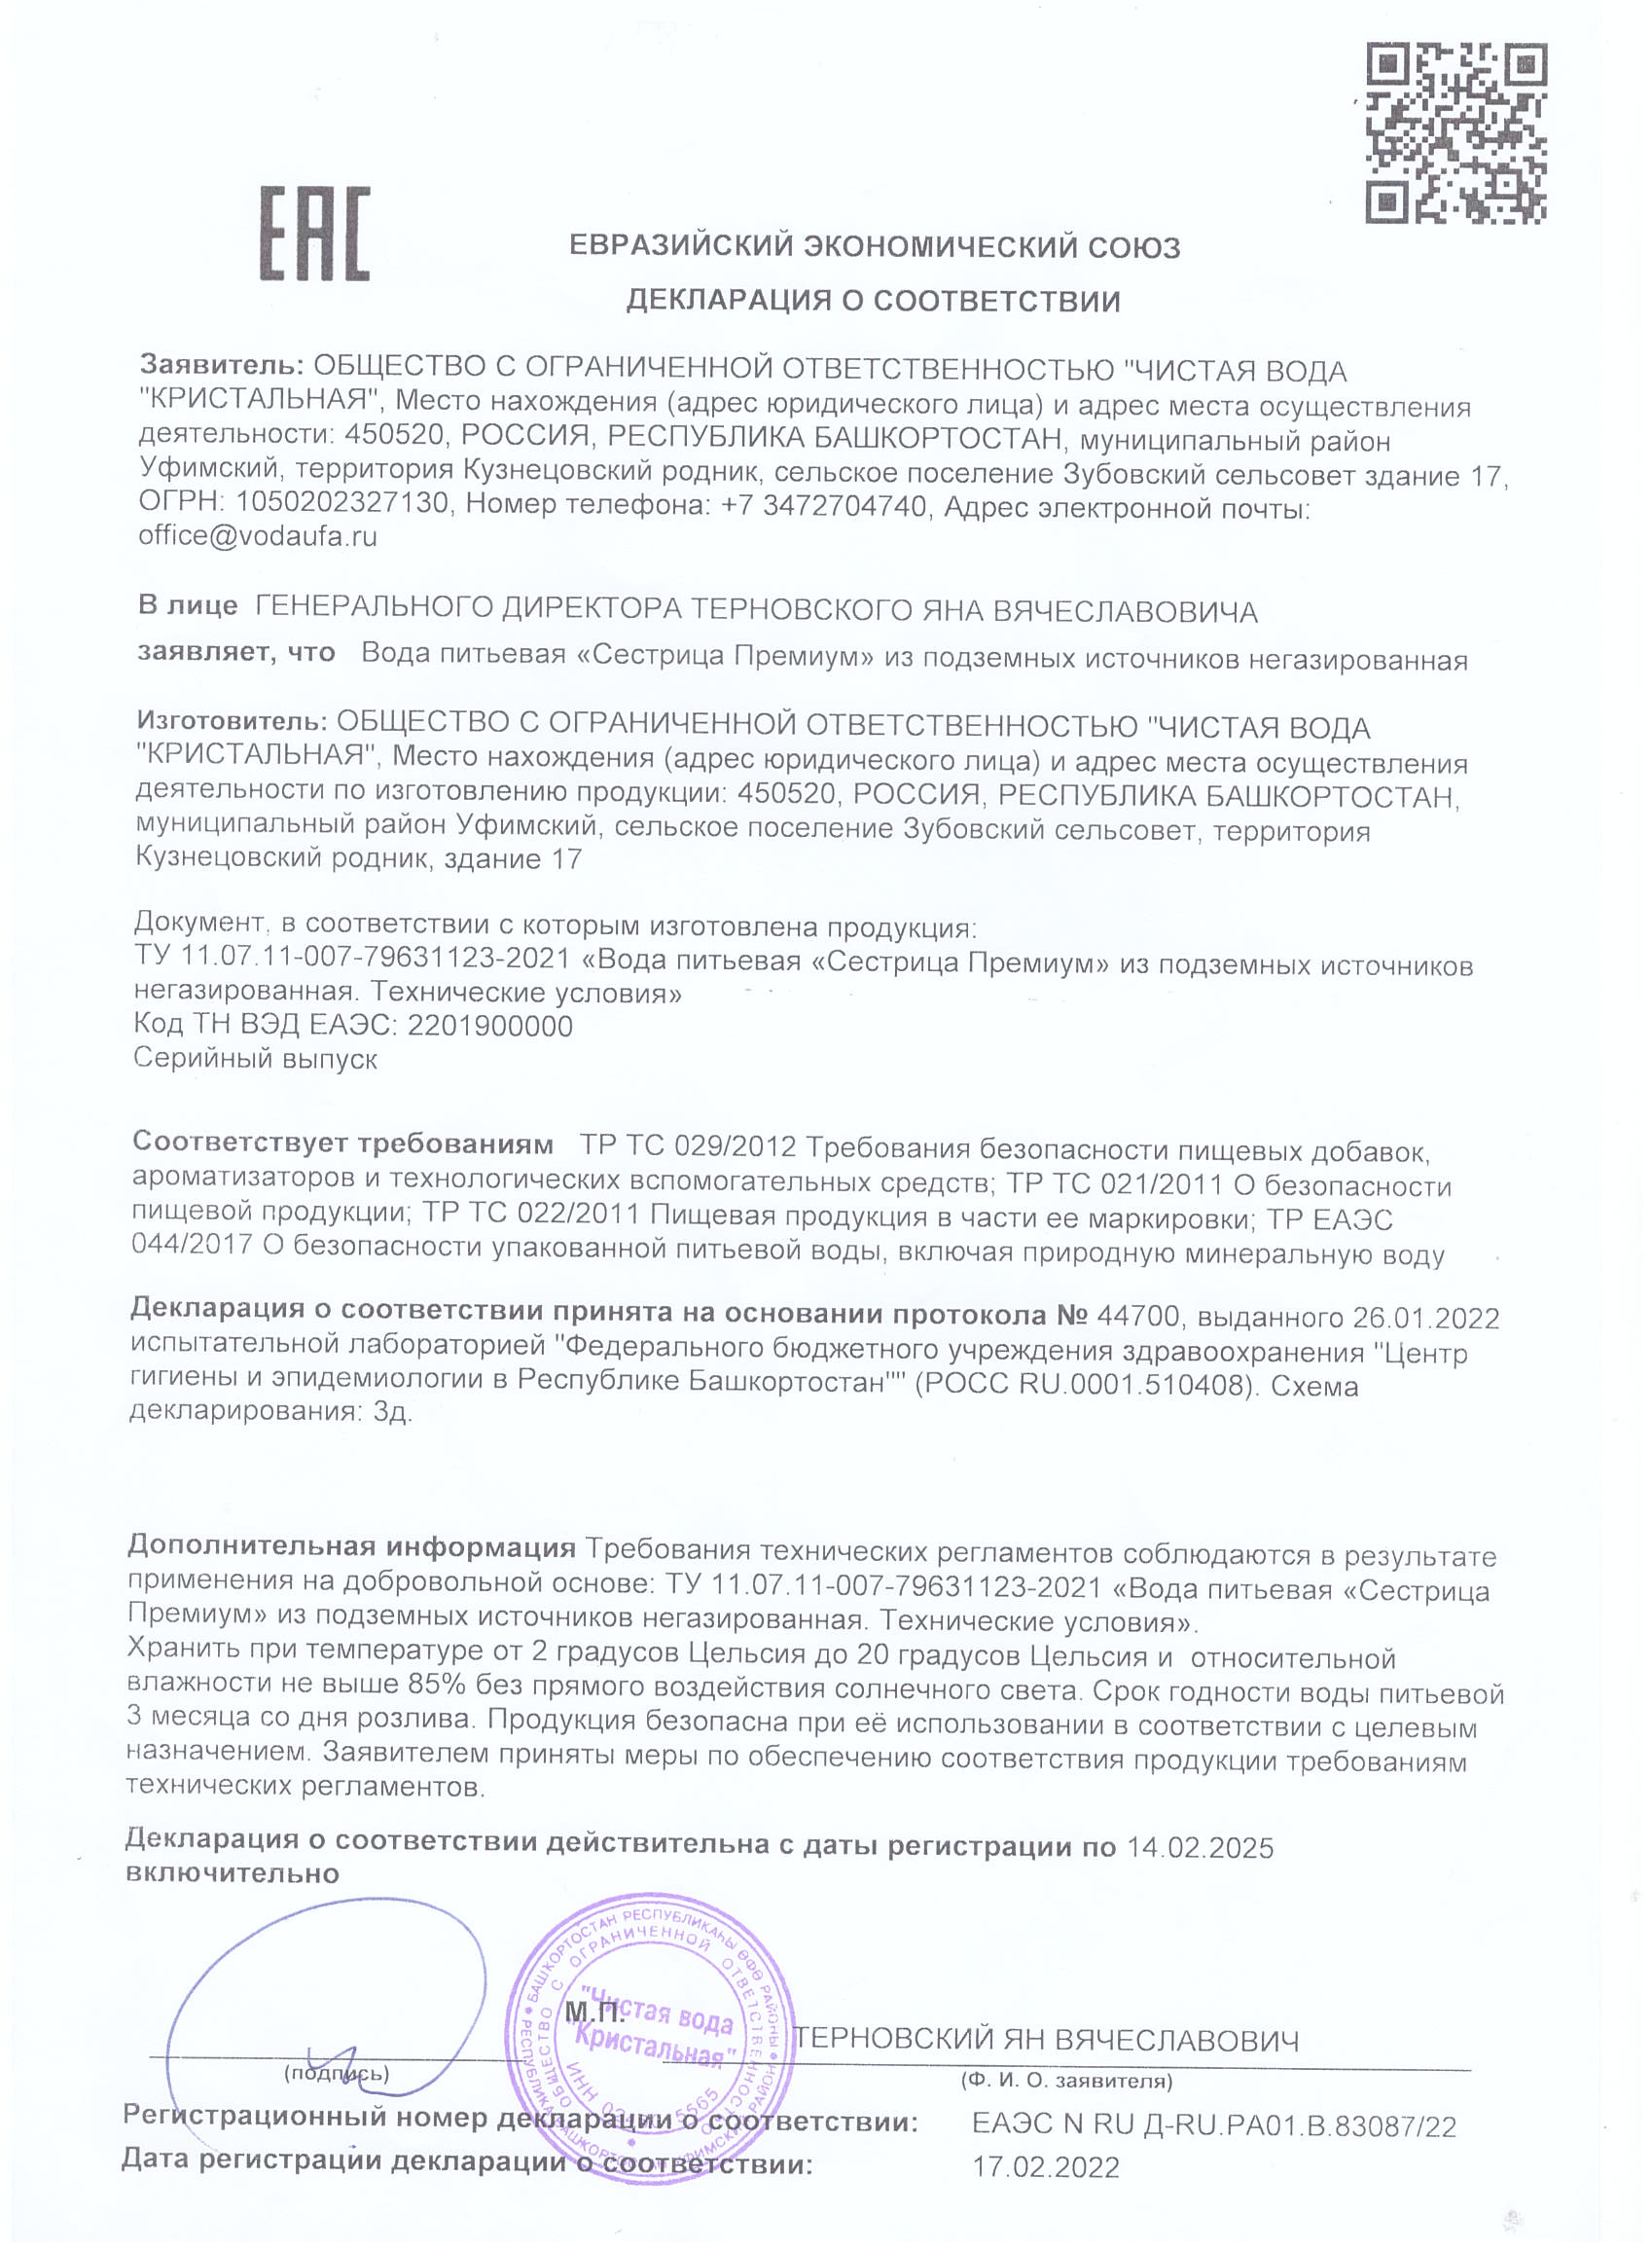 Декларация о соответствии Сестрица Премиум до 2025